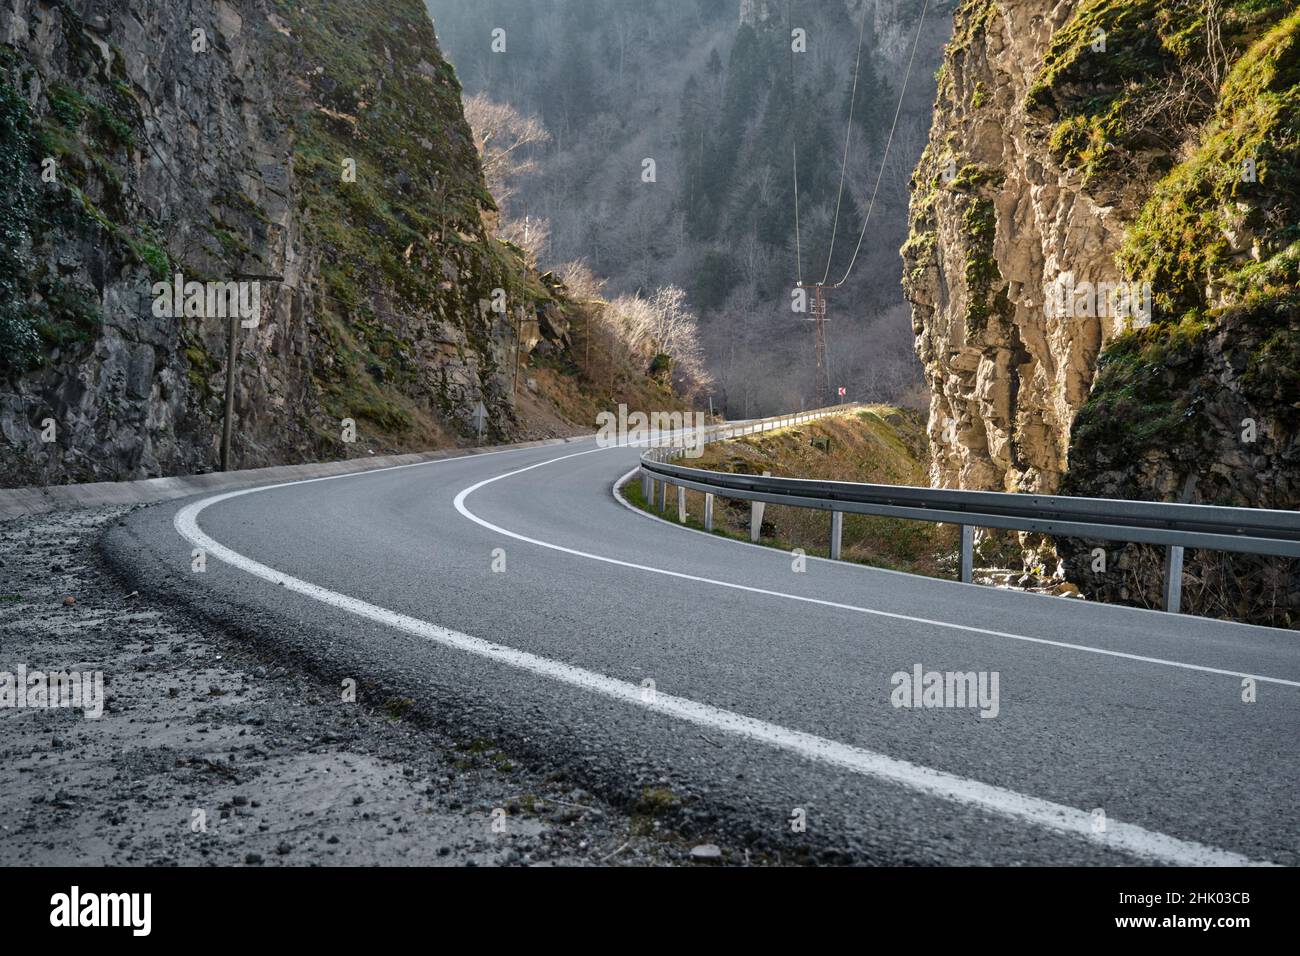 Curva S, strada asfaltata curva tra due enormi pietre, linee stradali. Foto Stock